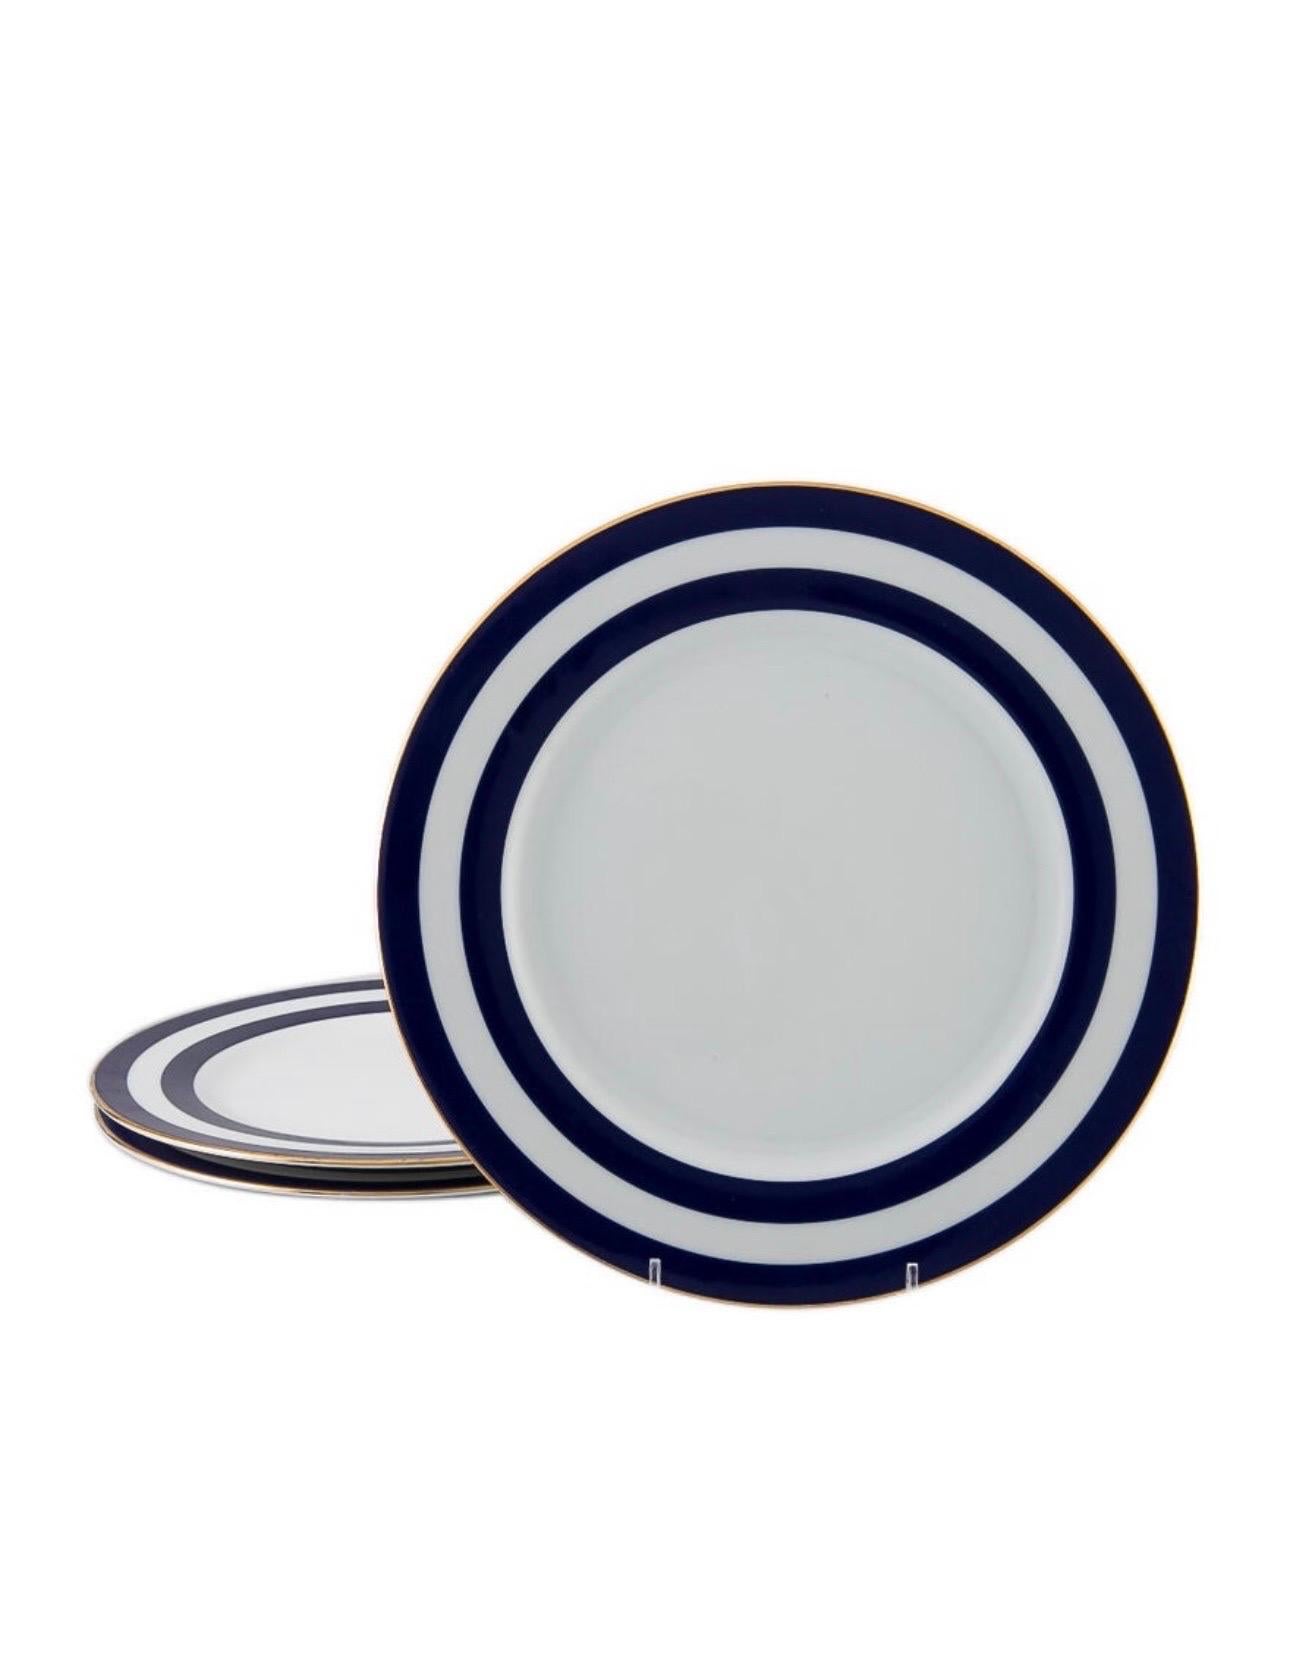 Portuguese Ralph Lauren Spectator Cadet Blue Dinnerware ~ 10 settings 